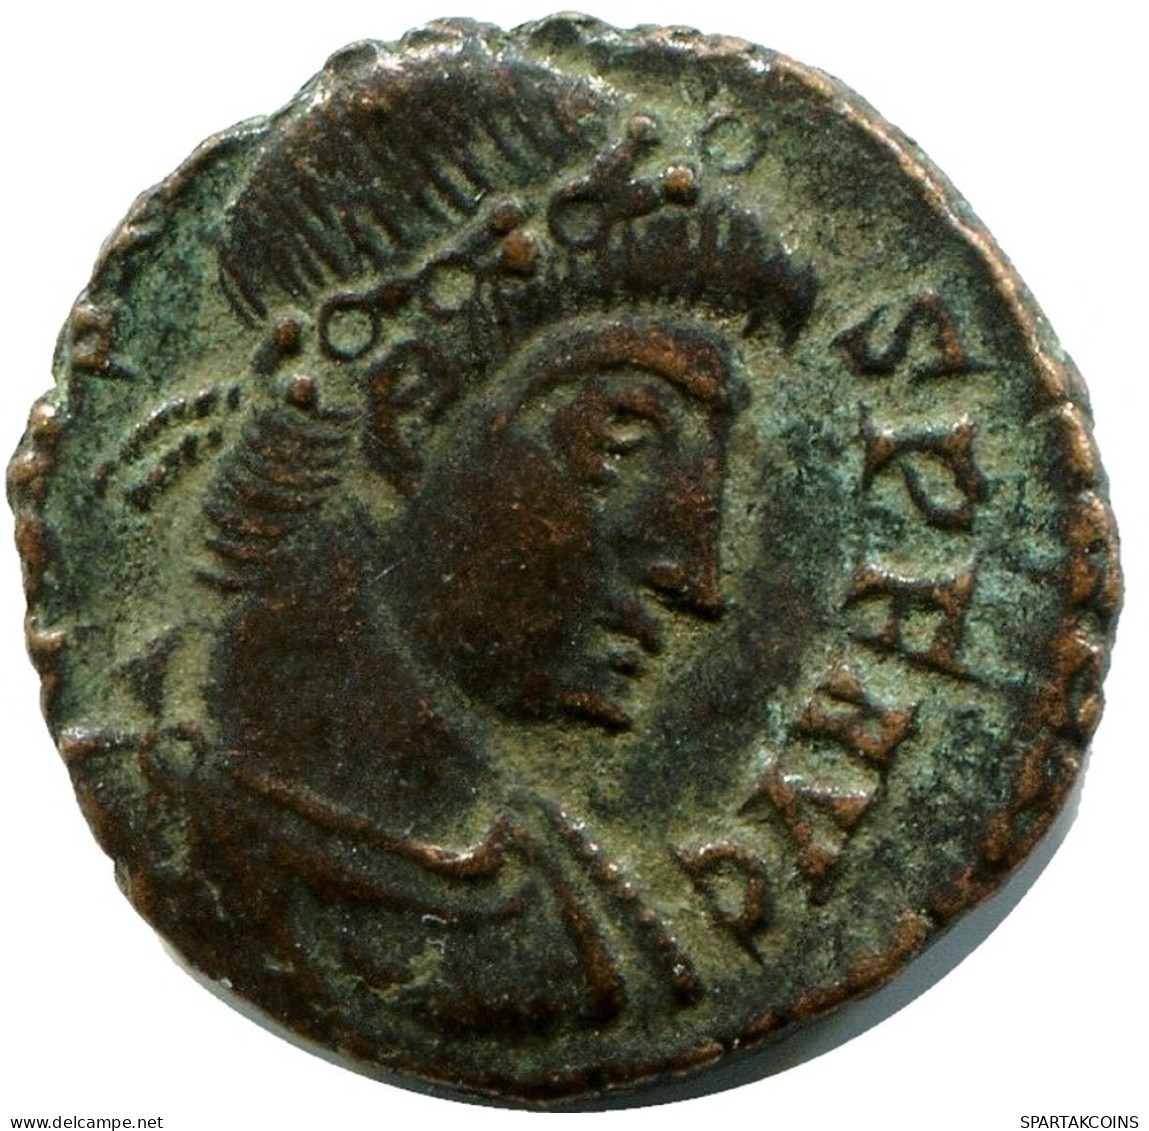 CONSTANS MINTED IN ROME ITALY FOUND IN IHNASYAH HOARD EGYPT #ANC11499.14.F.A - Der Christlischen Kaiser (307 / 363)